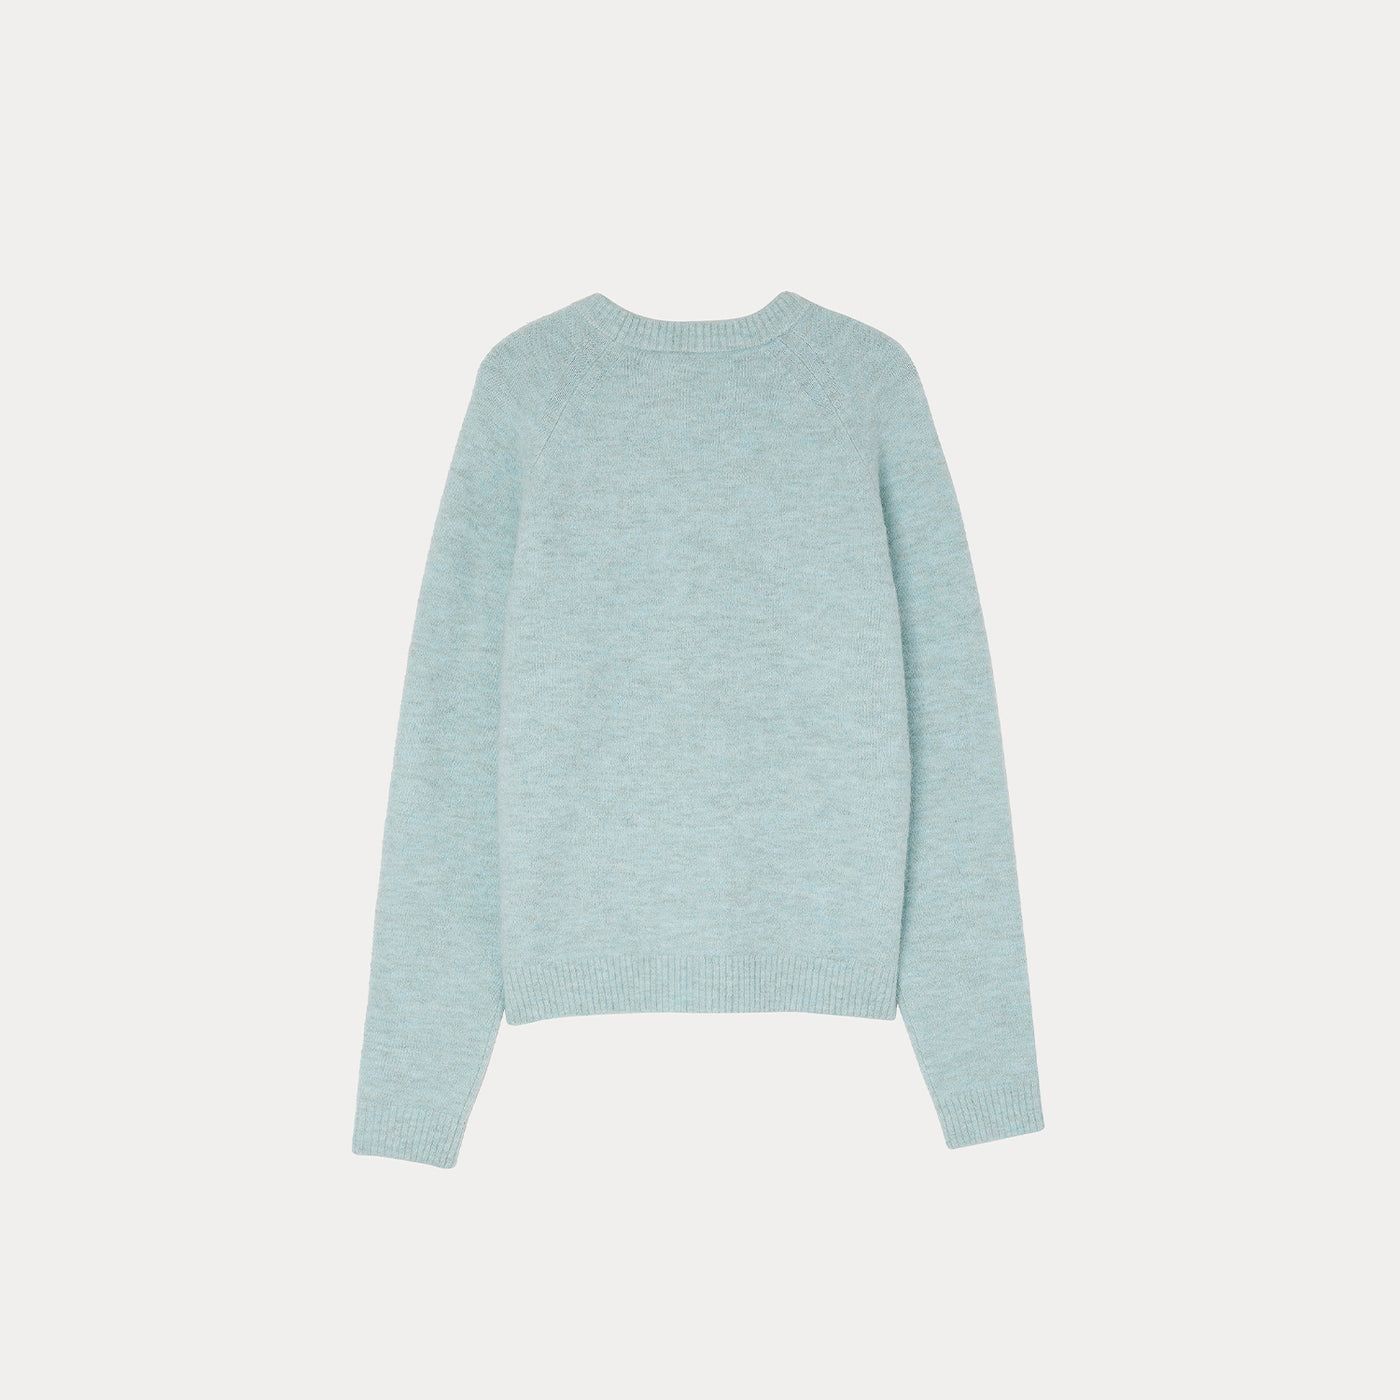 Aspen Sweater sky blue